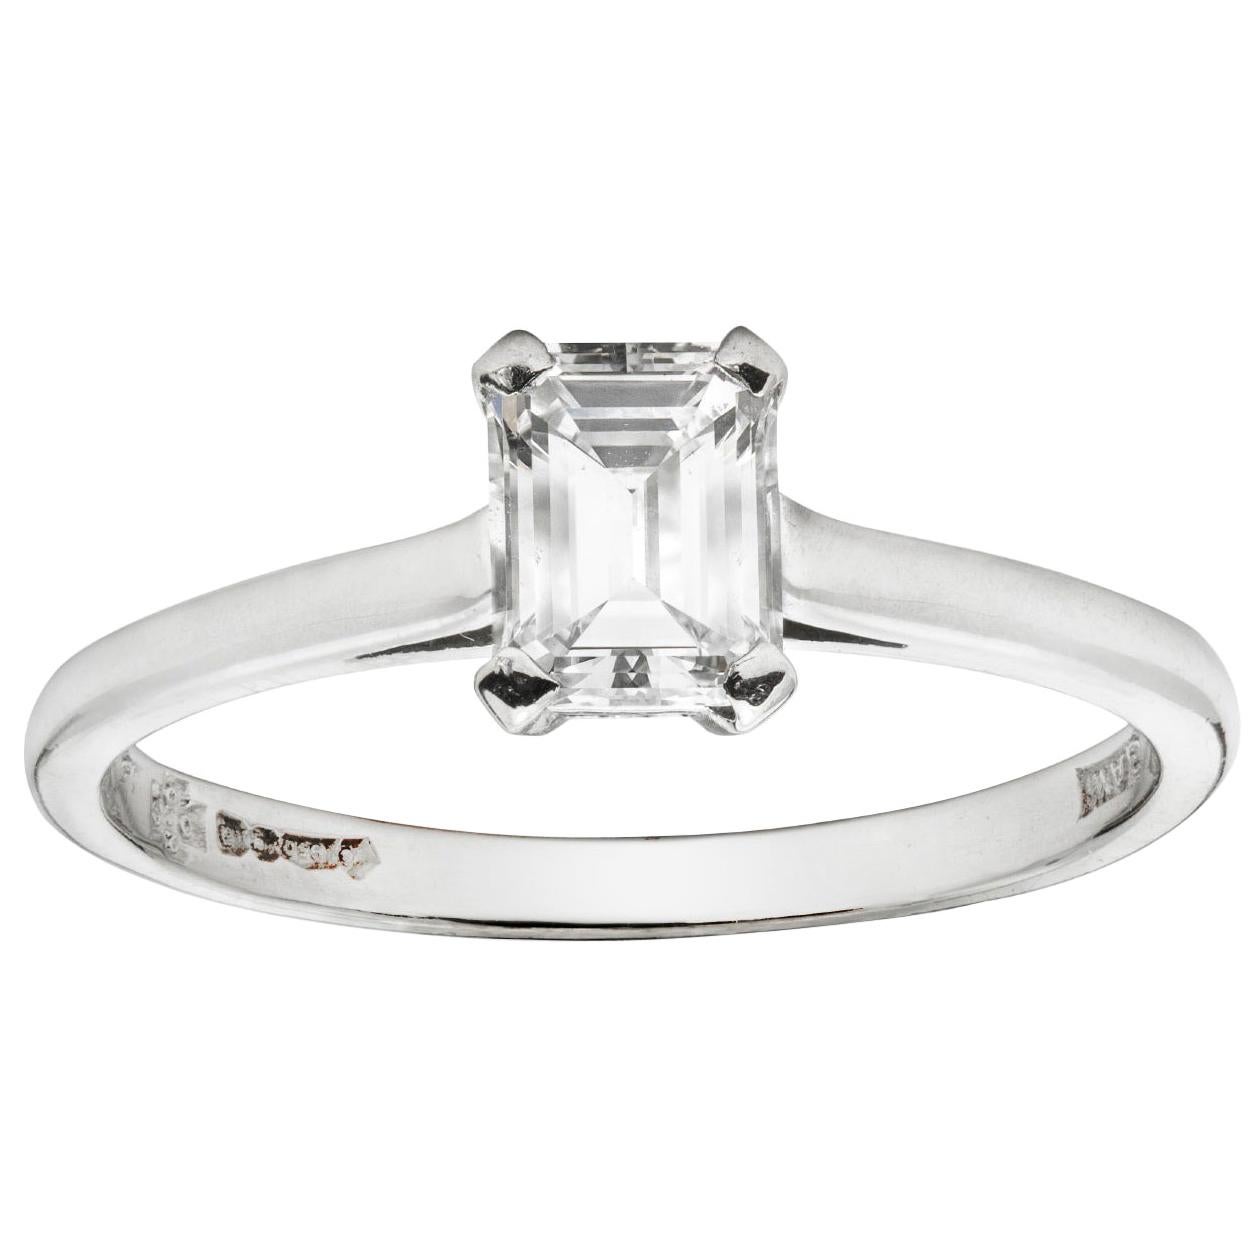 Emerald-Cut Solitaire Single Stone Diamond Ring